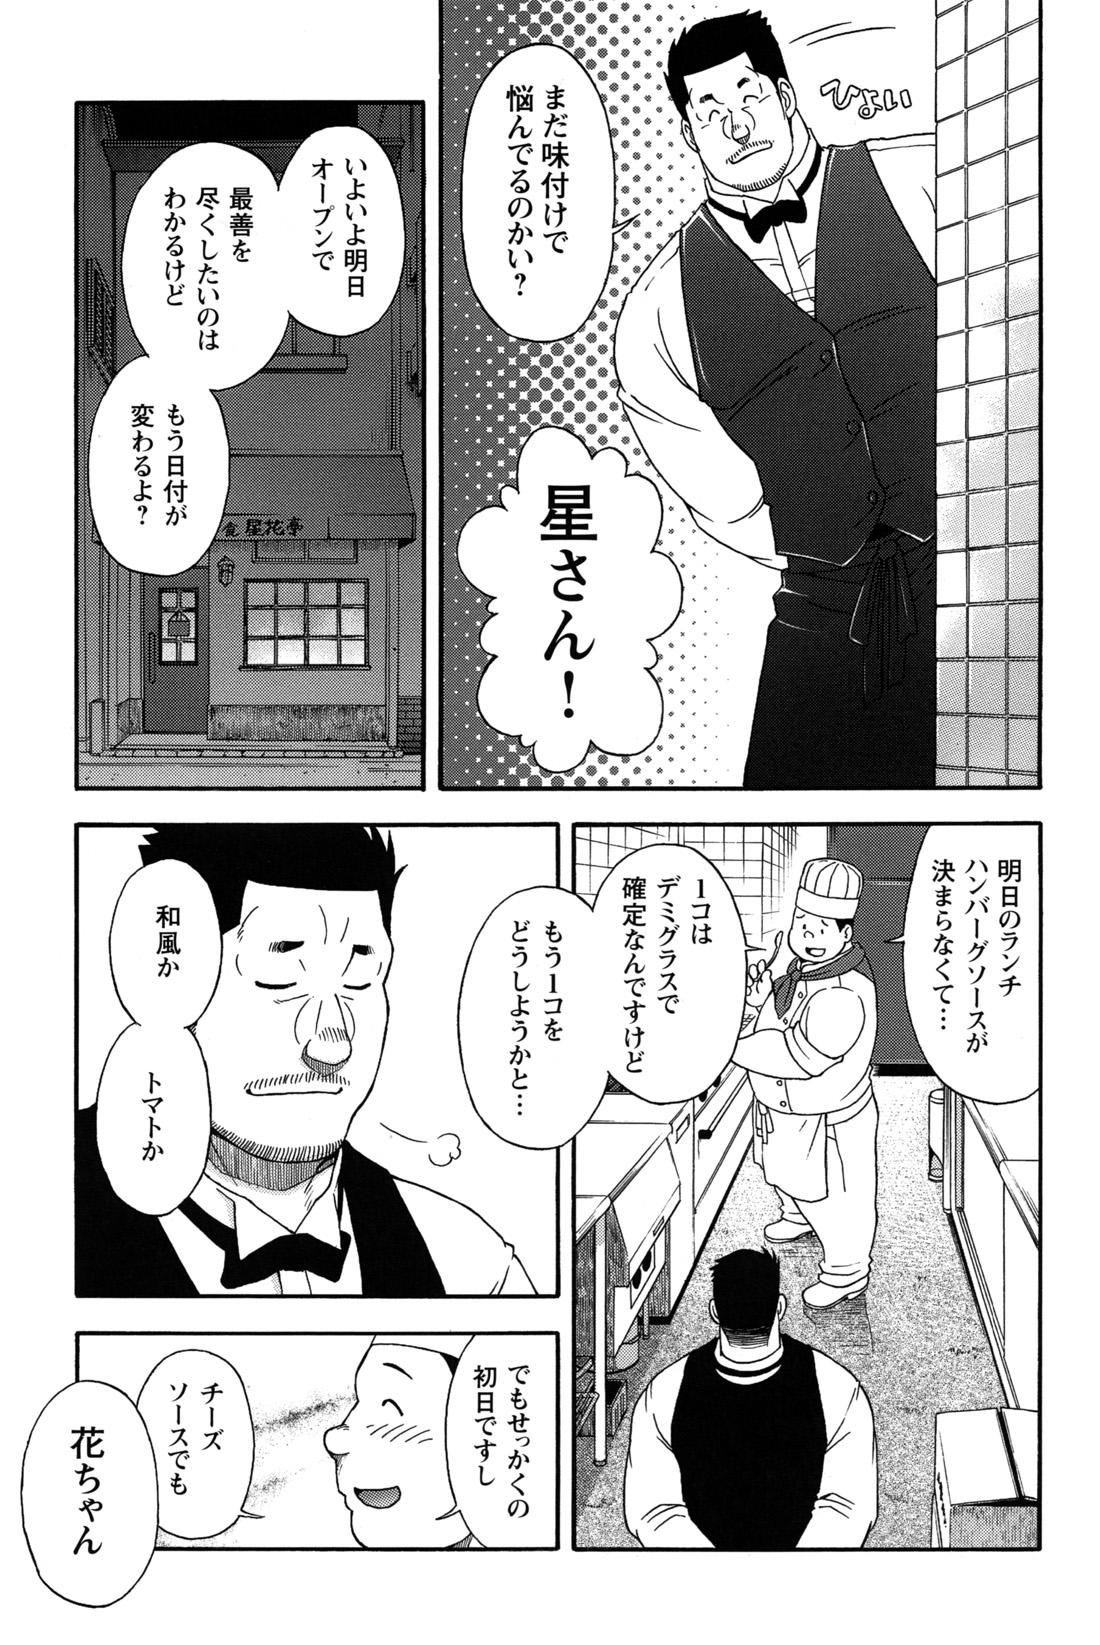 Comic G-men Gaho No.12 Aibou 66